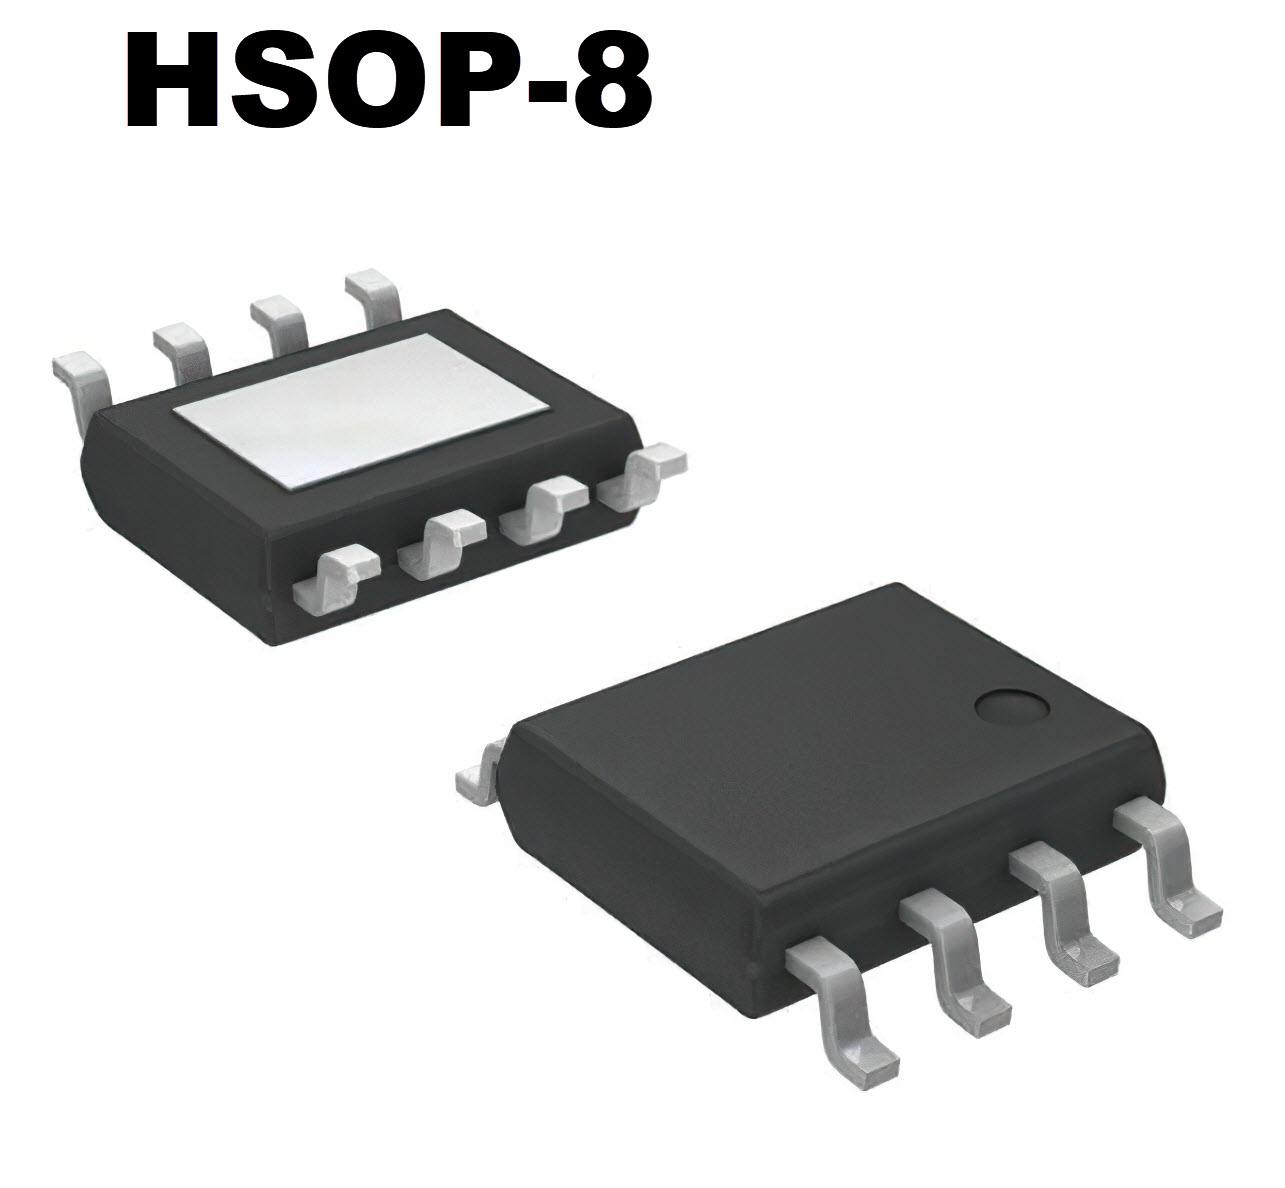 HSOP-8